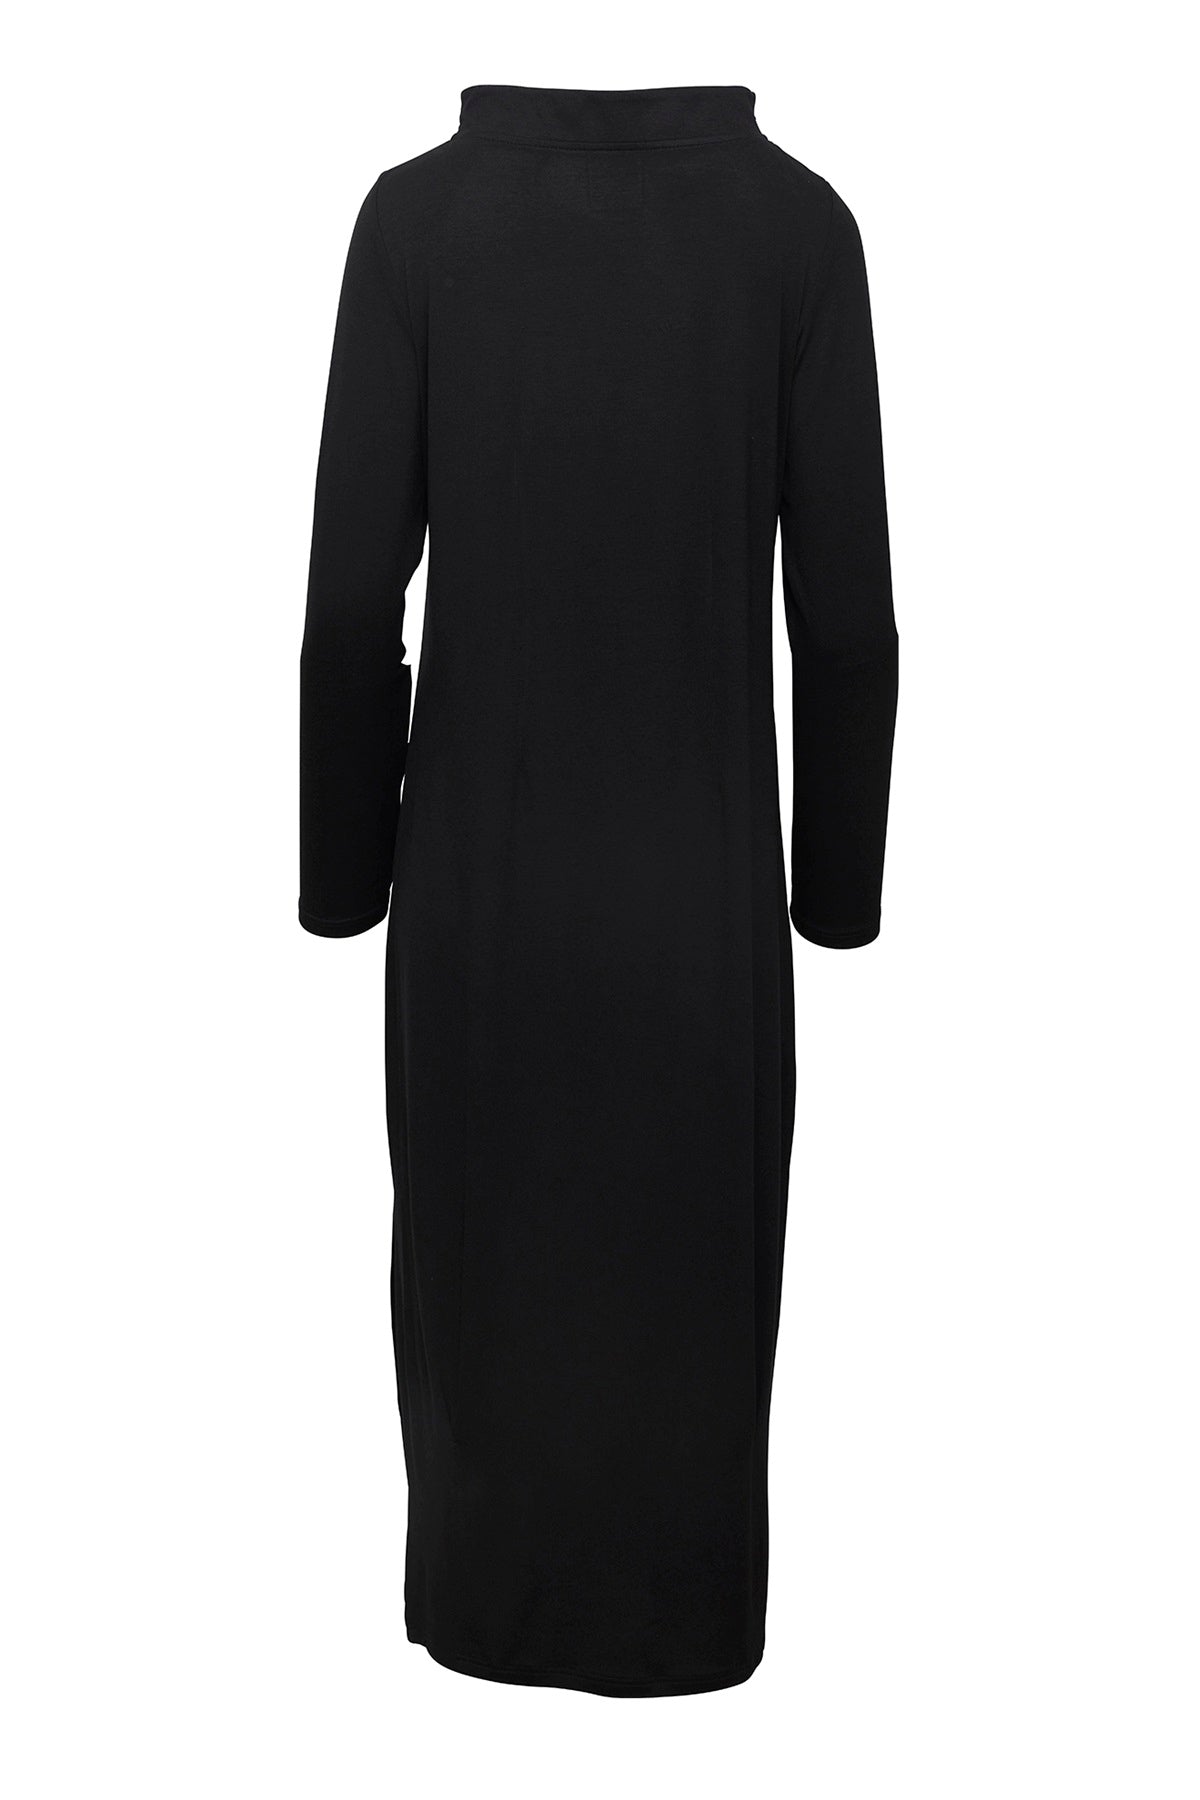 E Avantgarde kjole 14154-99, Black